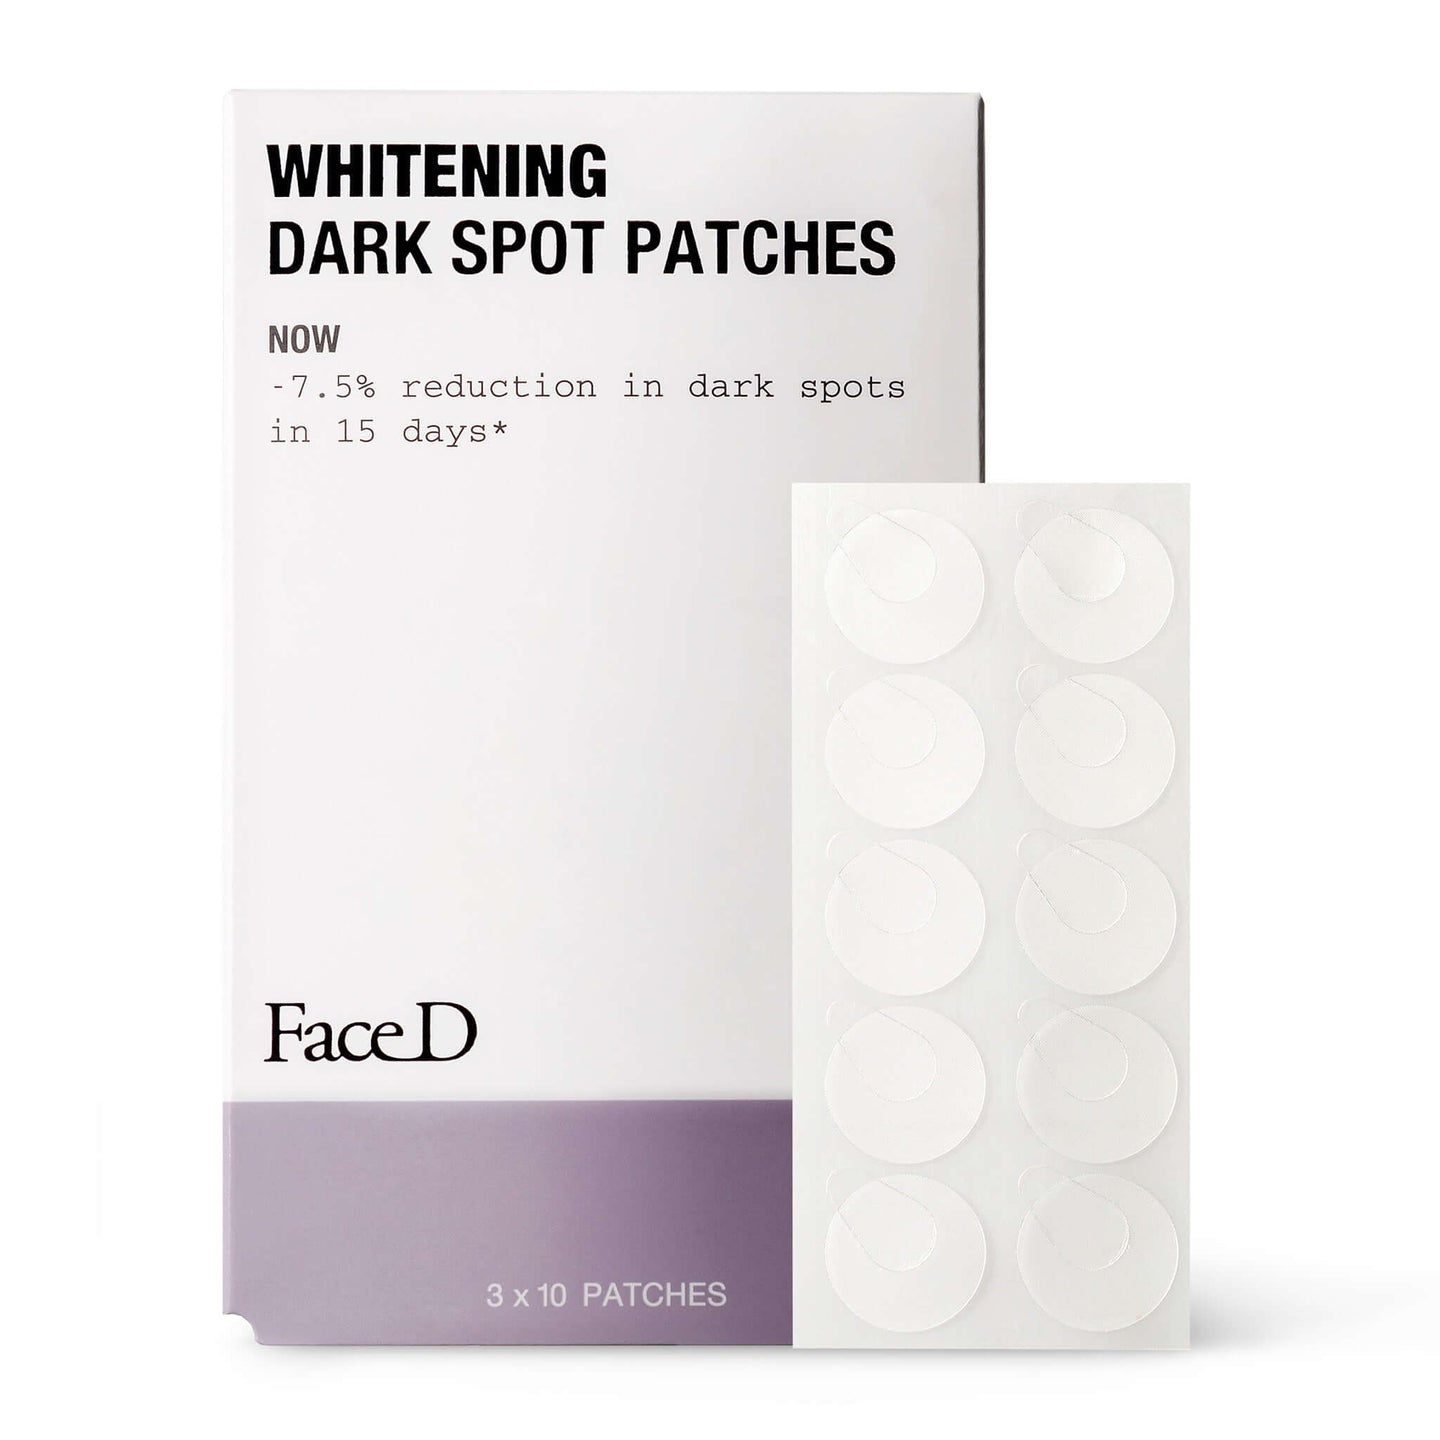 WHITENING DARK SPOT PATCHES - 30 PIECES